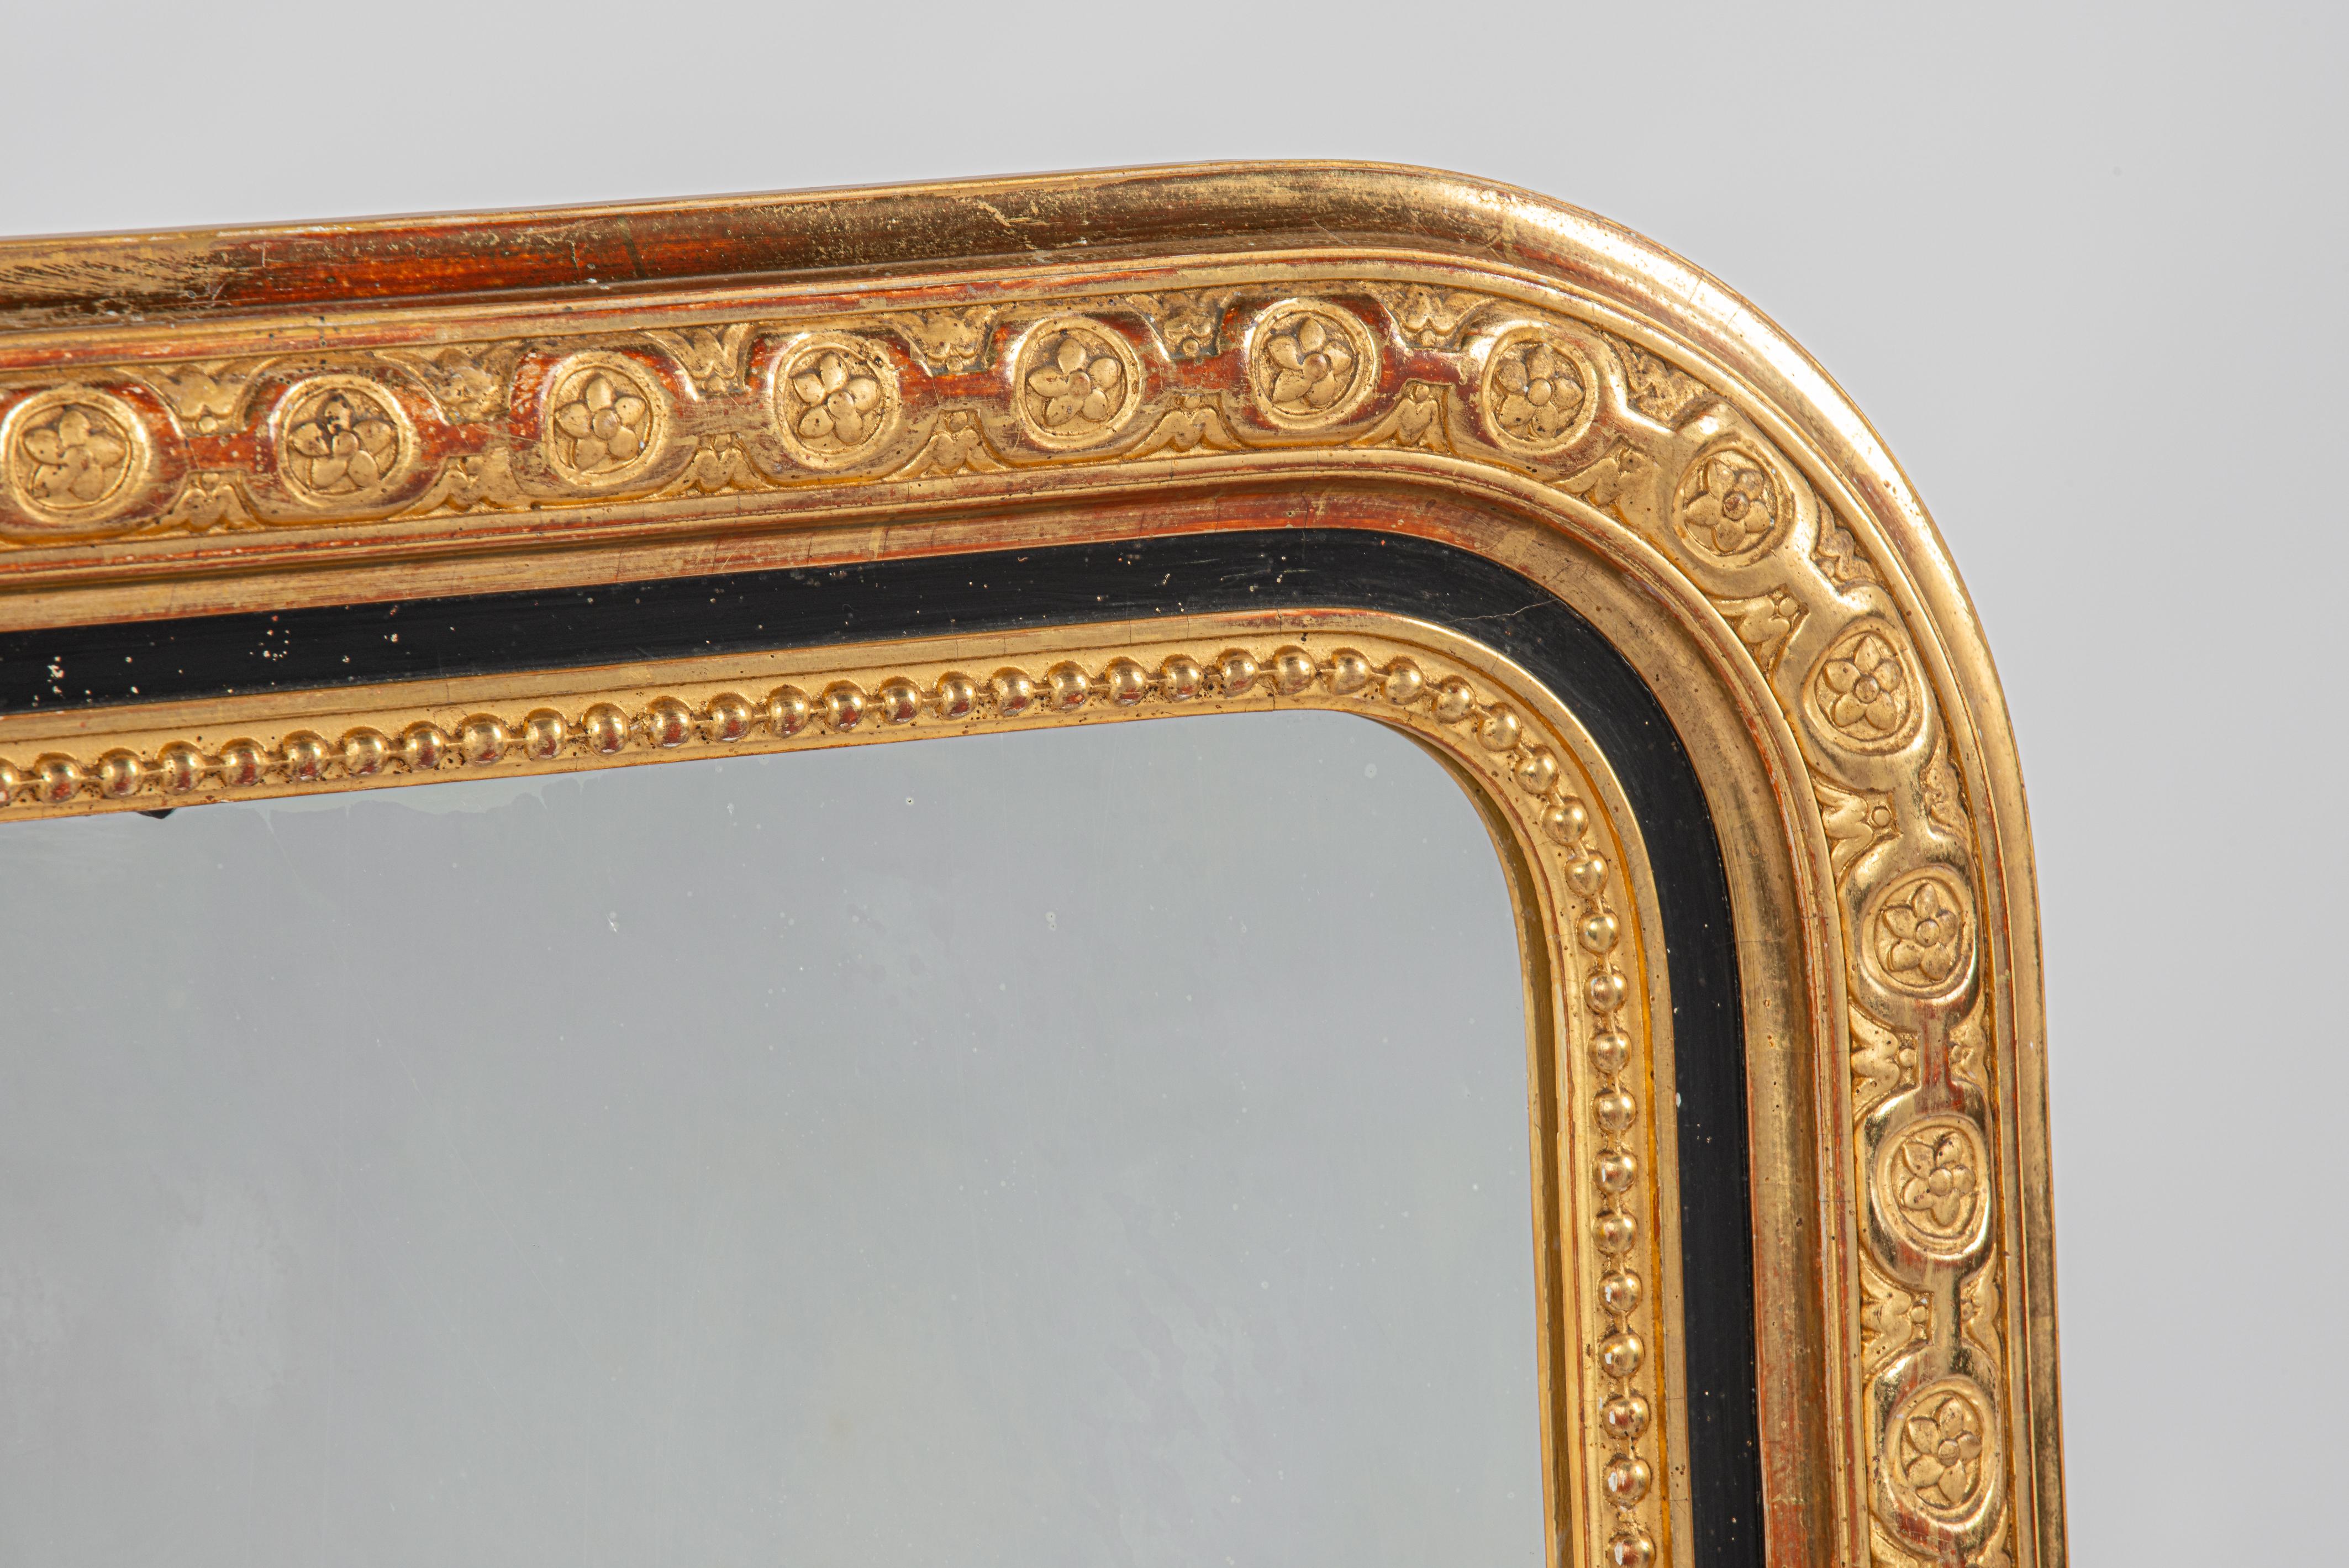 Hier wird ein wunderschöner antiker, blattvergoldeter Louis Philippe-Spiegel aus Südfrankreich angeboten. Dieser Spiegel stammt aus der Zeit um 1870 und weist oben abgerundete Ecken auf, die für den Louis-Philippe-Stil charakteristisch sind. Es wird